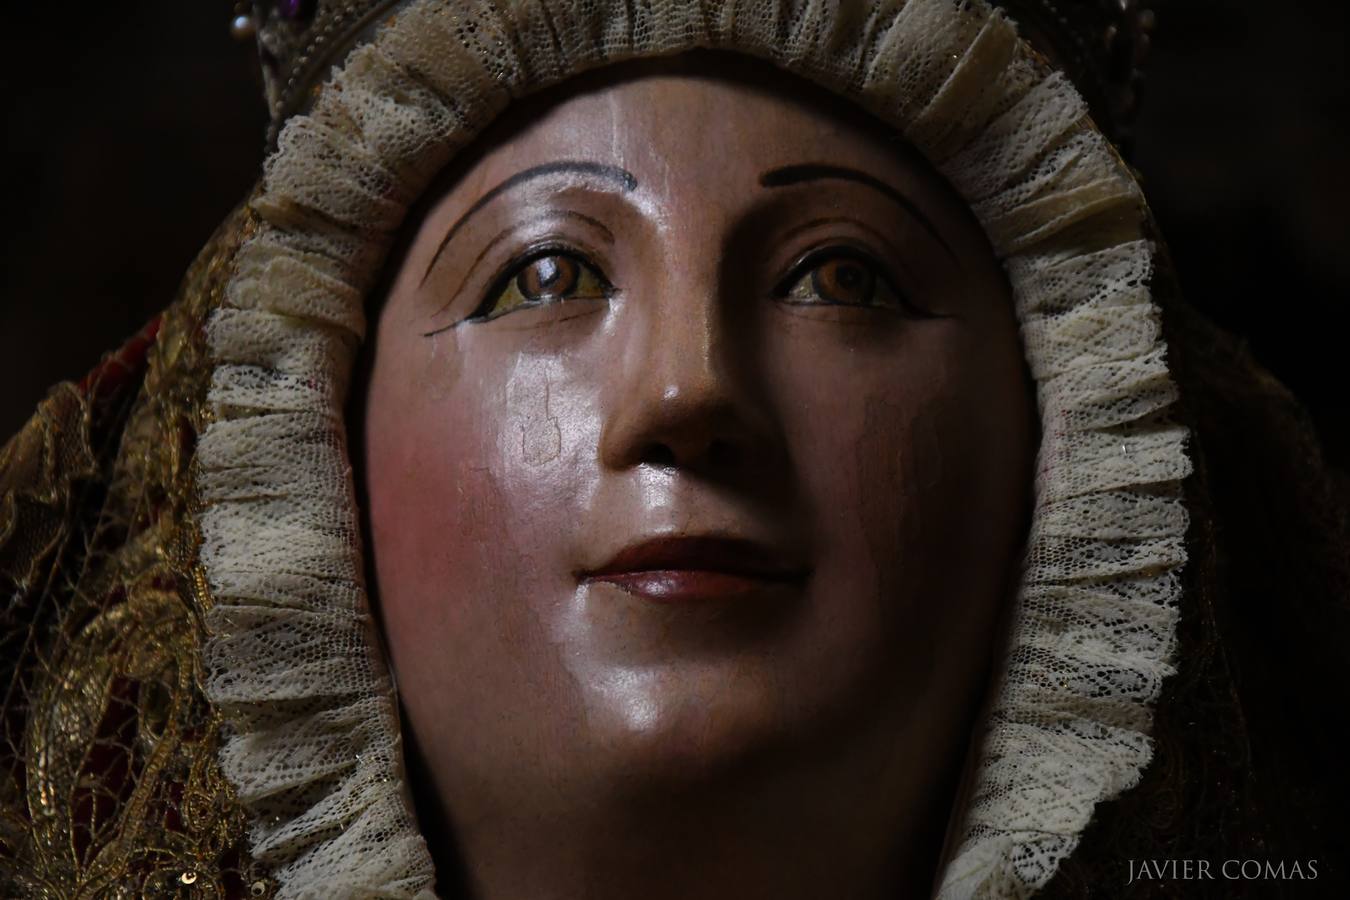 Galería de la Virgen de los Reyes desde un prisma diferente